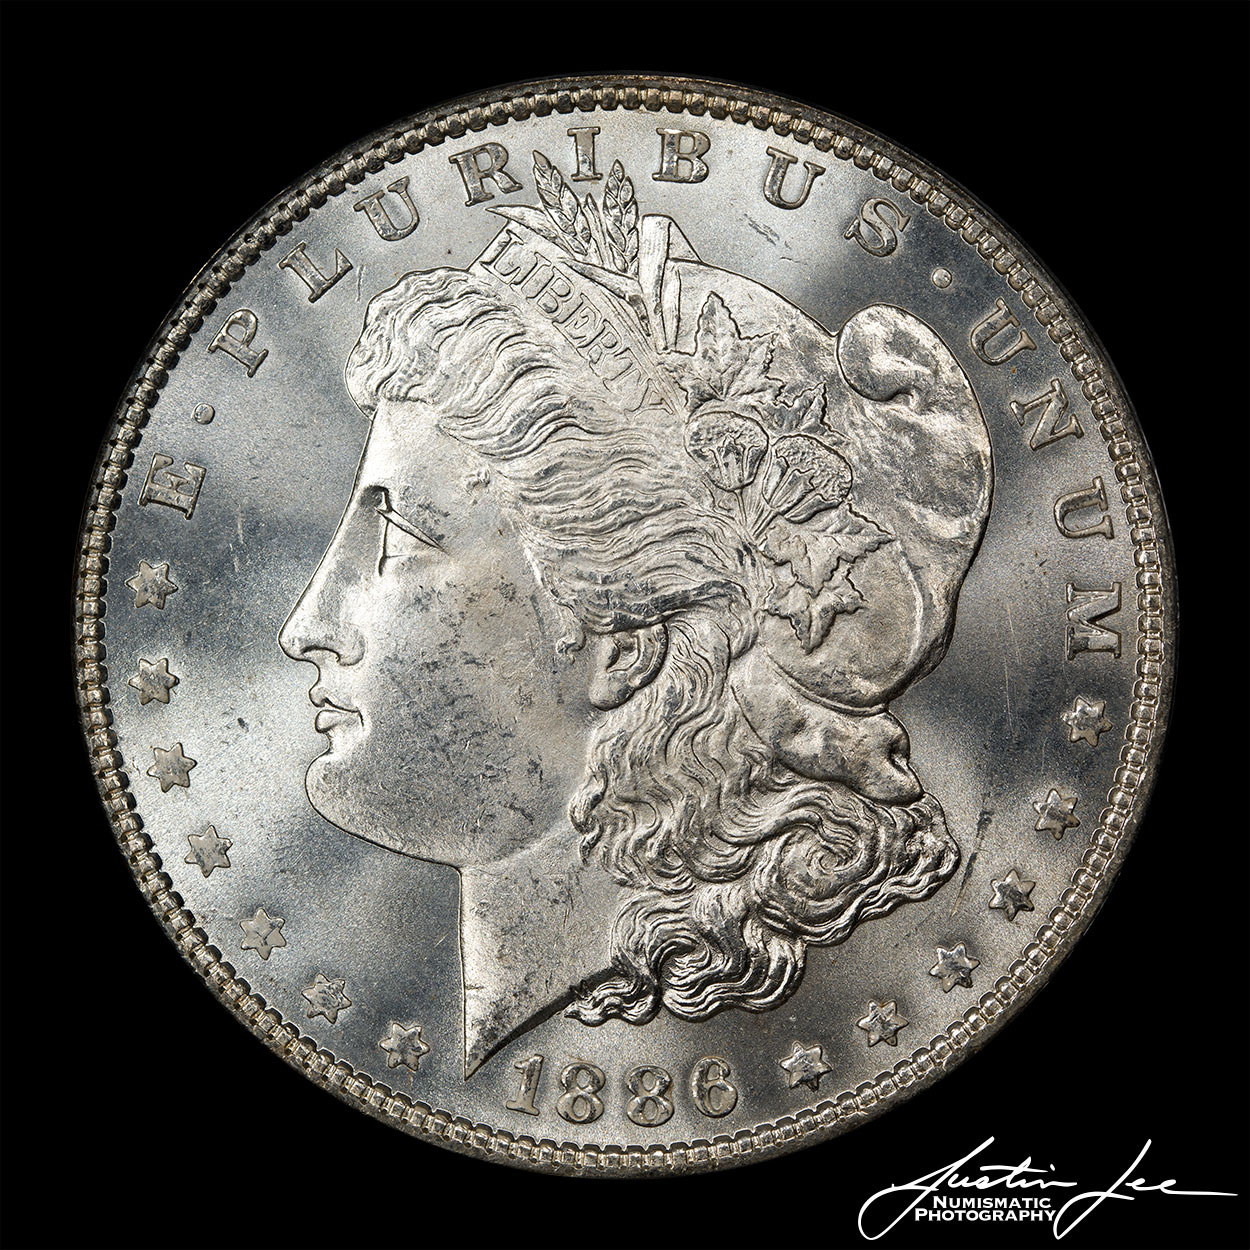 1886-Morgan-Dollar-Obverse.jpg